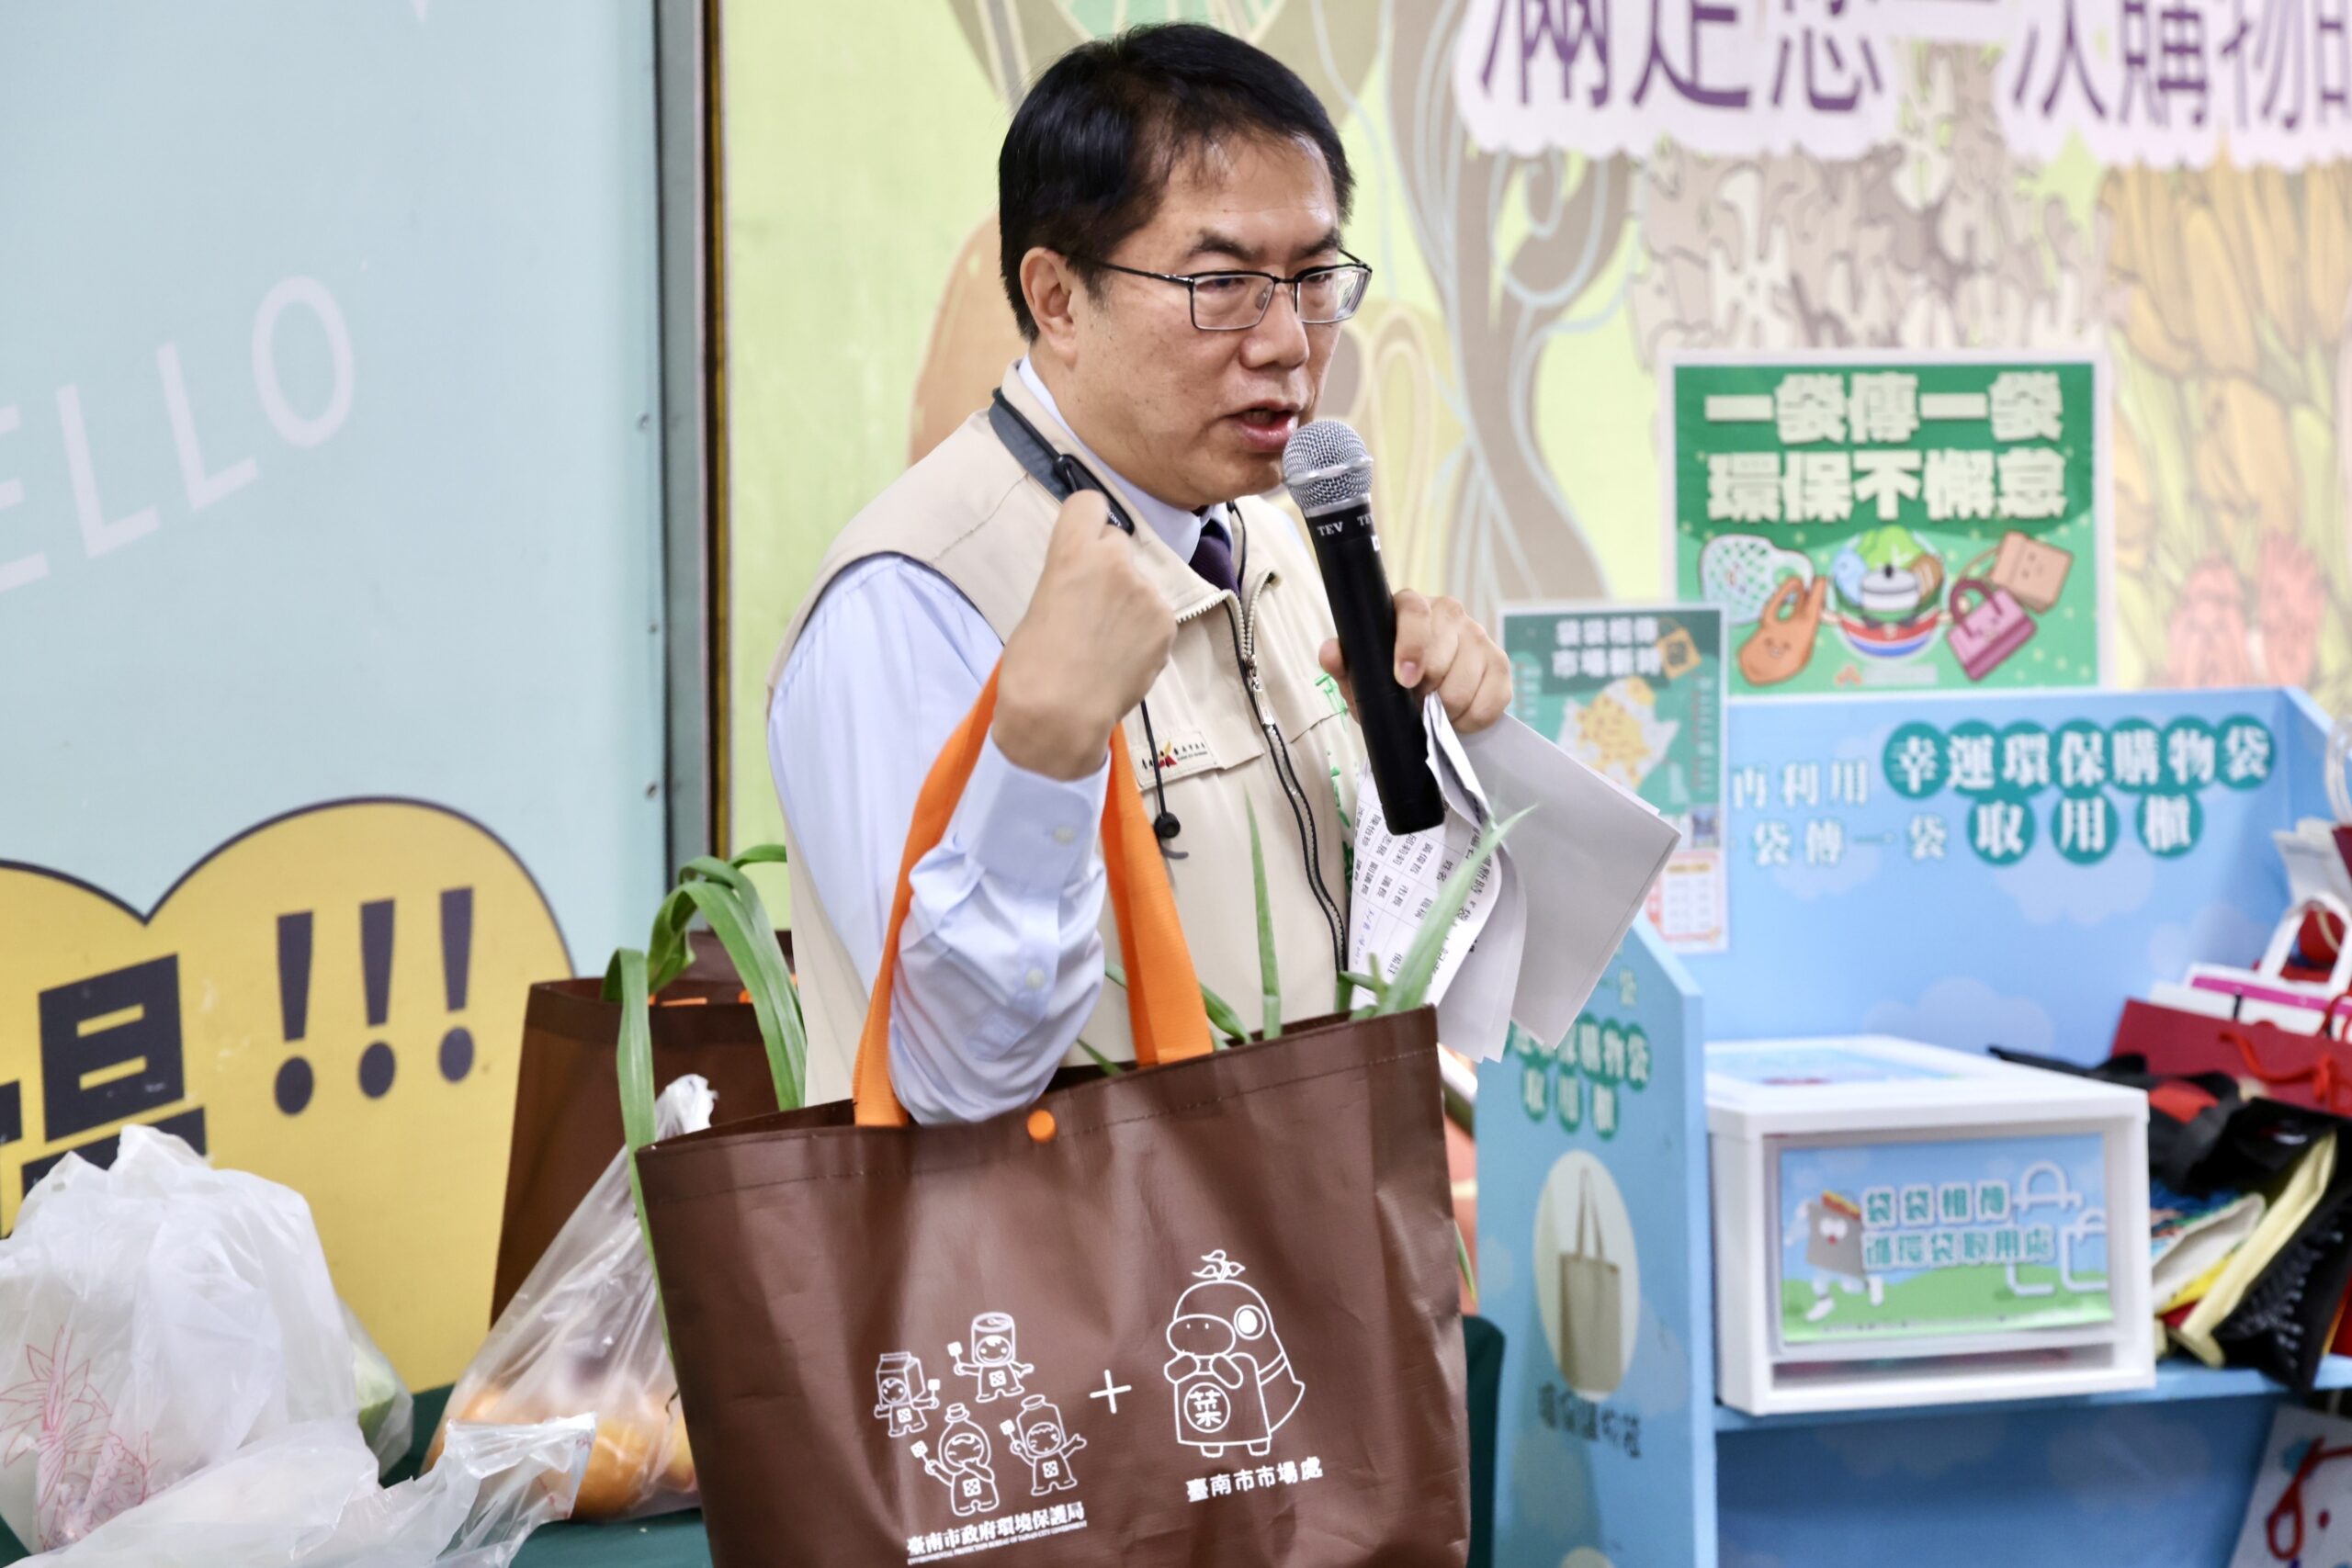 台南市場新時「袋」  黃偉哲號召民眾響應「少用、自備、再使用」減塑妙招 